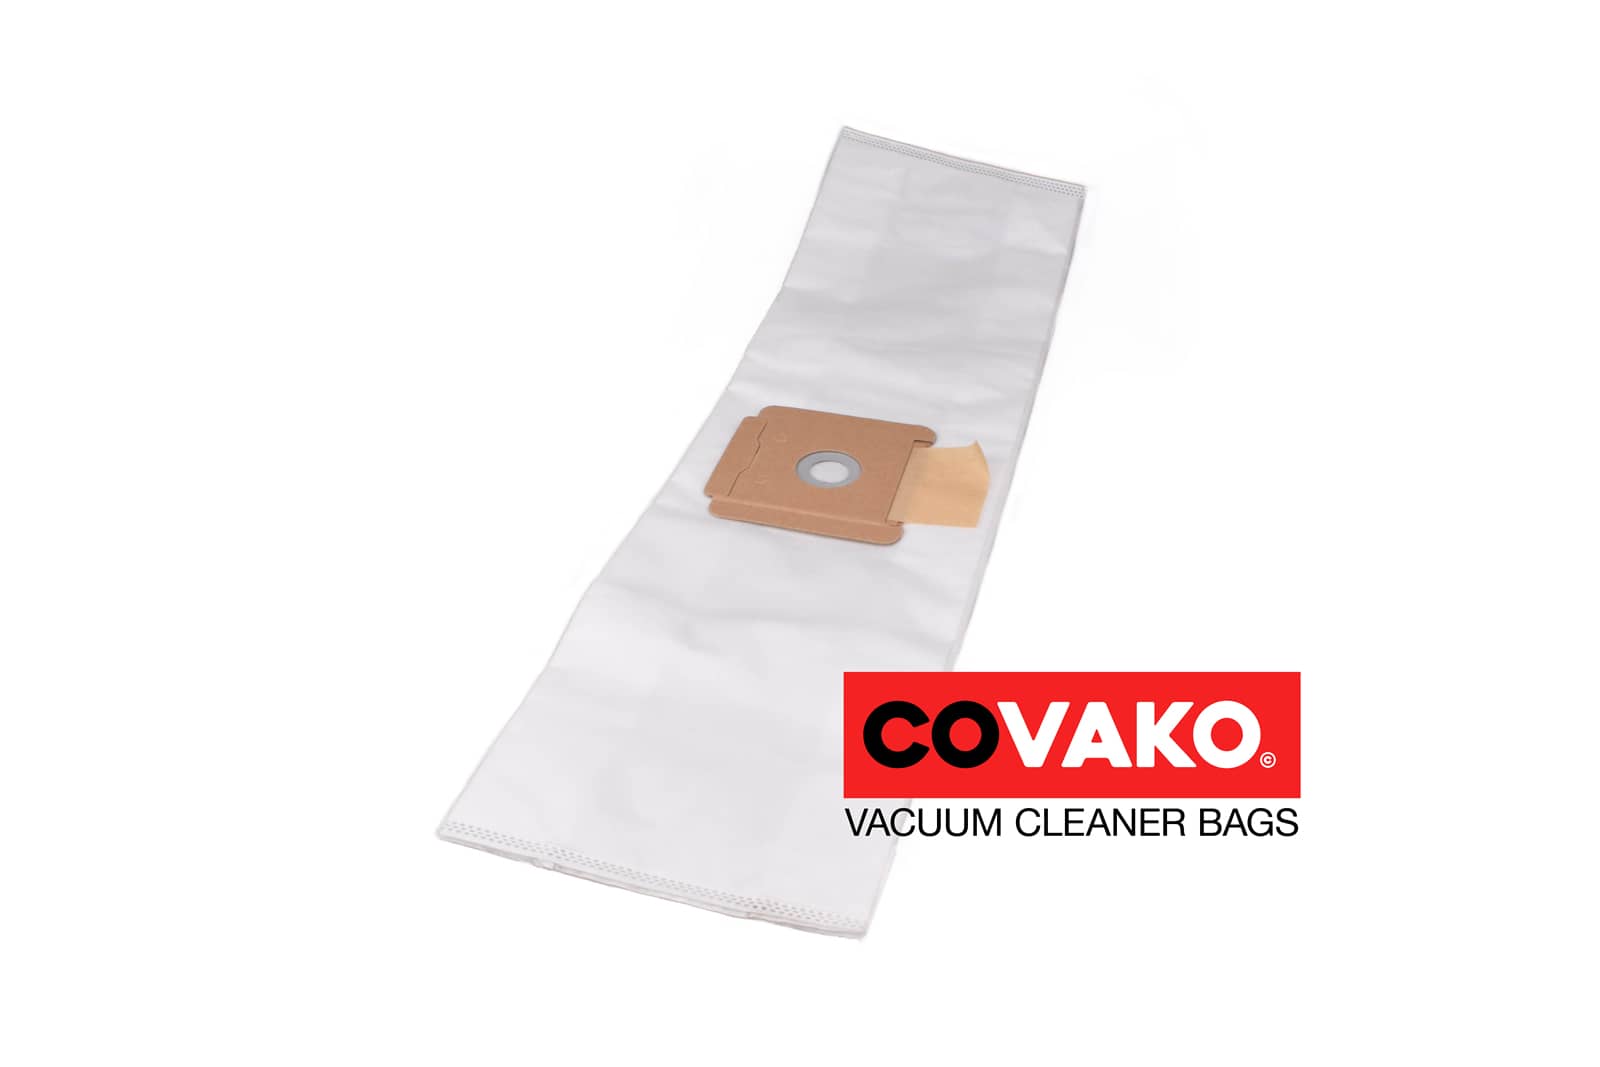 Wirbel Makros / Synthesis - Wirbel vacuum cleaner bags